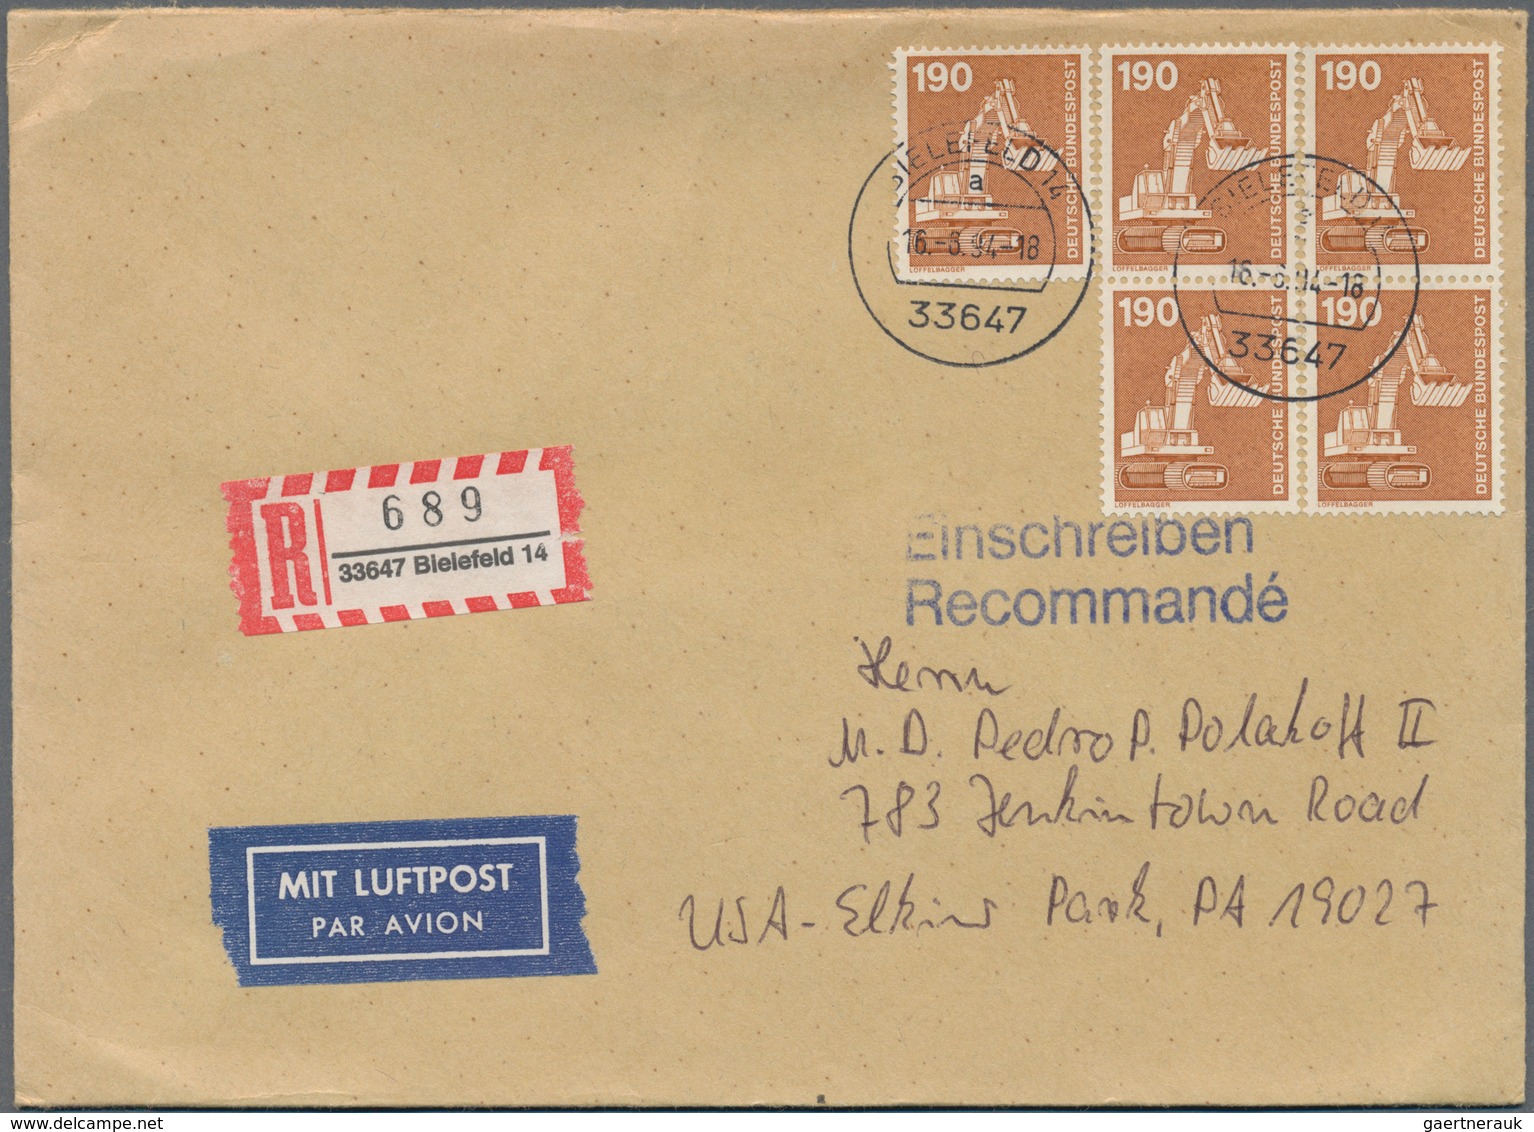 Bundesrepublik Deutschland: 1956/1997, Post nach Übersee, vielseitige Partie von ca. 68 Briefen und